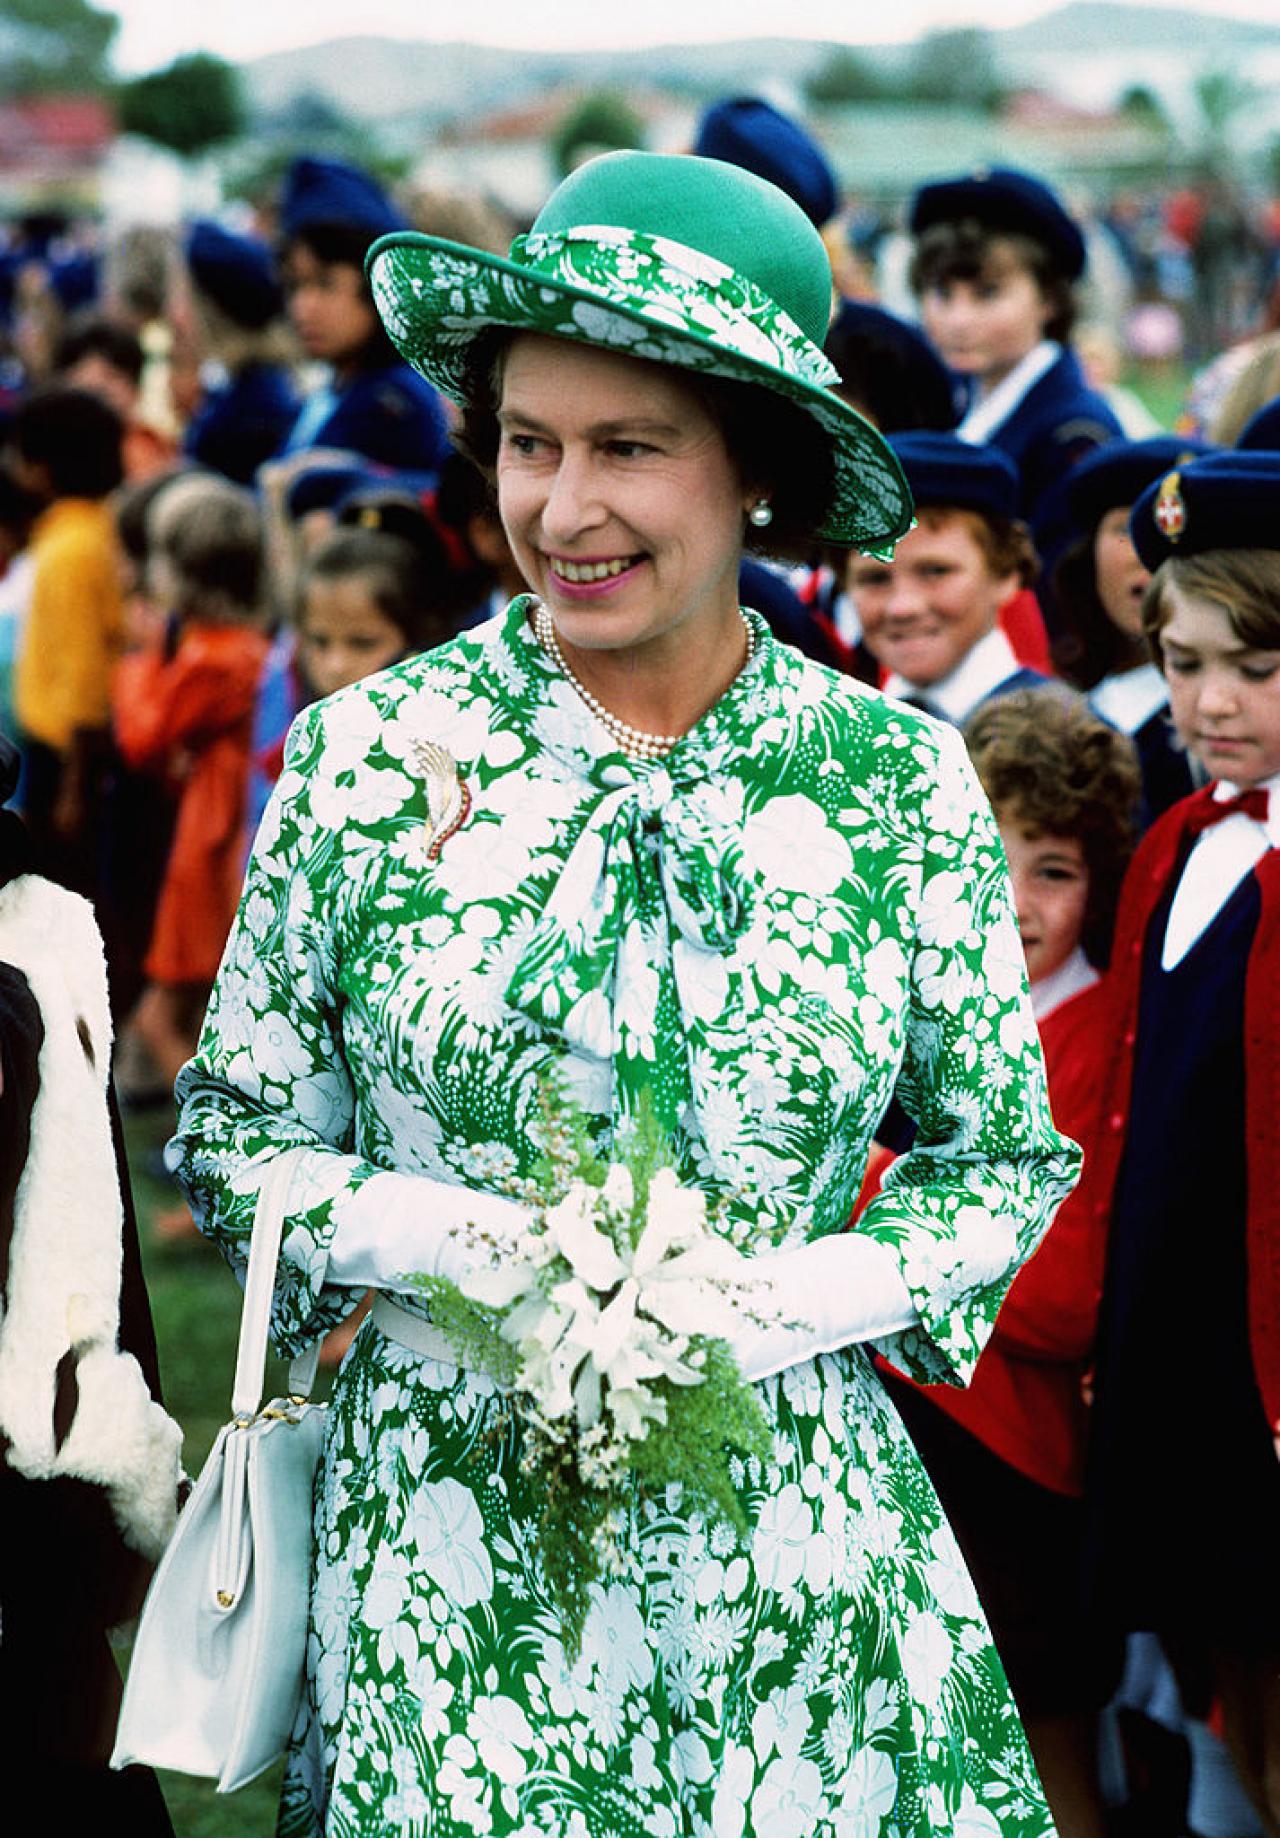 Als deel van haar zilveren jubileum bezoekt koningin Elizabeth Nieuw-Zeeland in 1977. (c) Getty